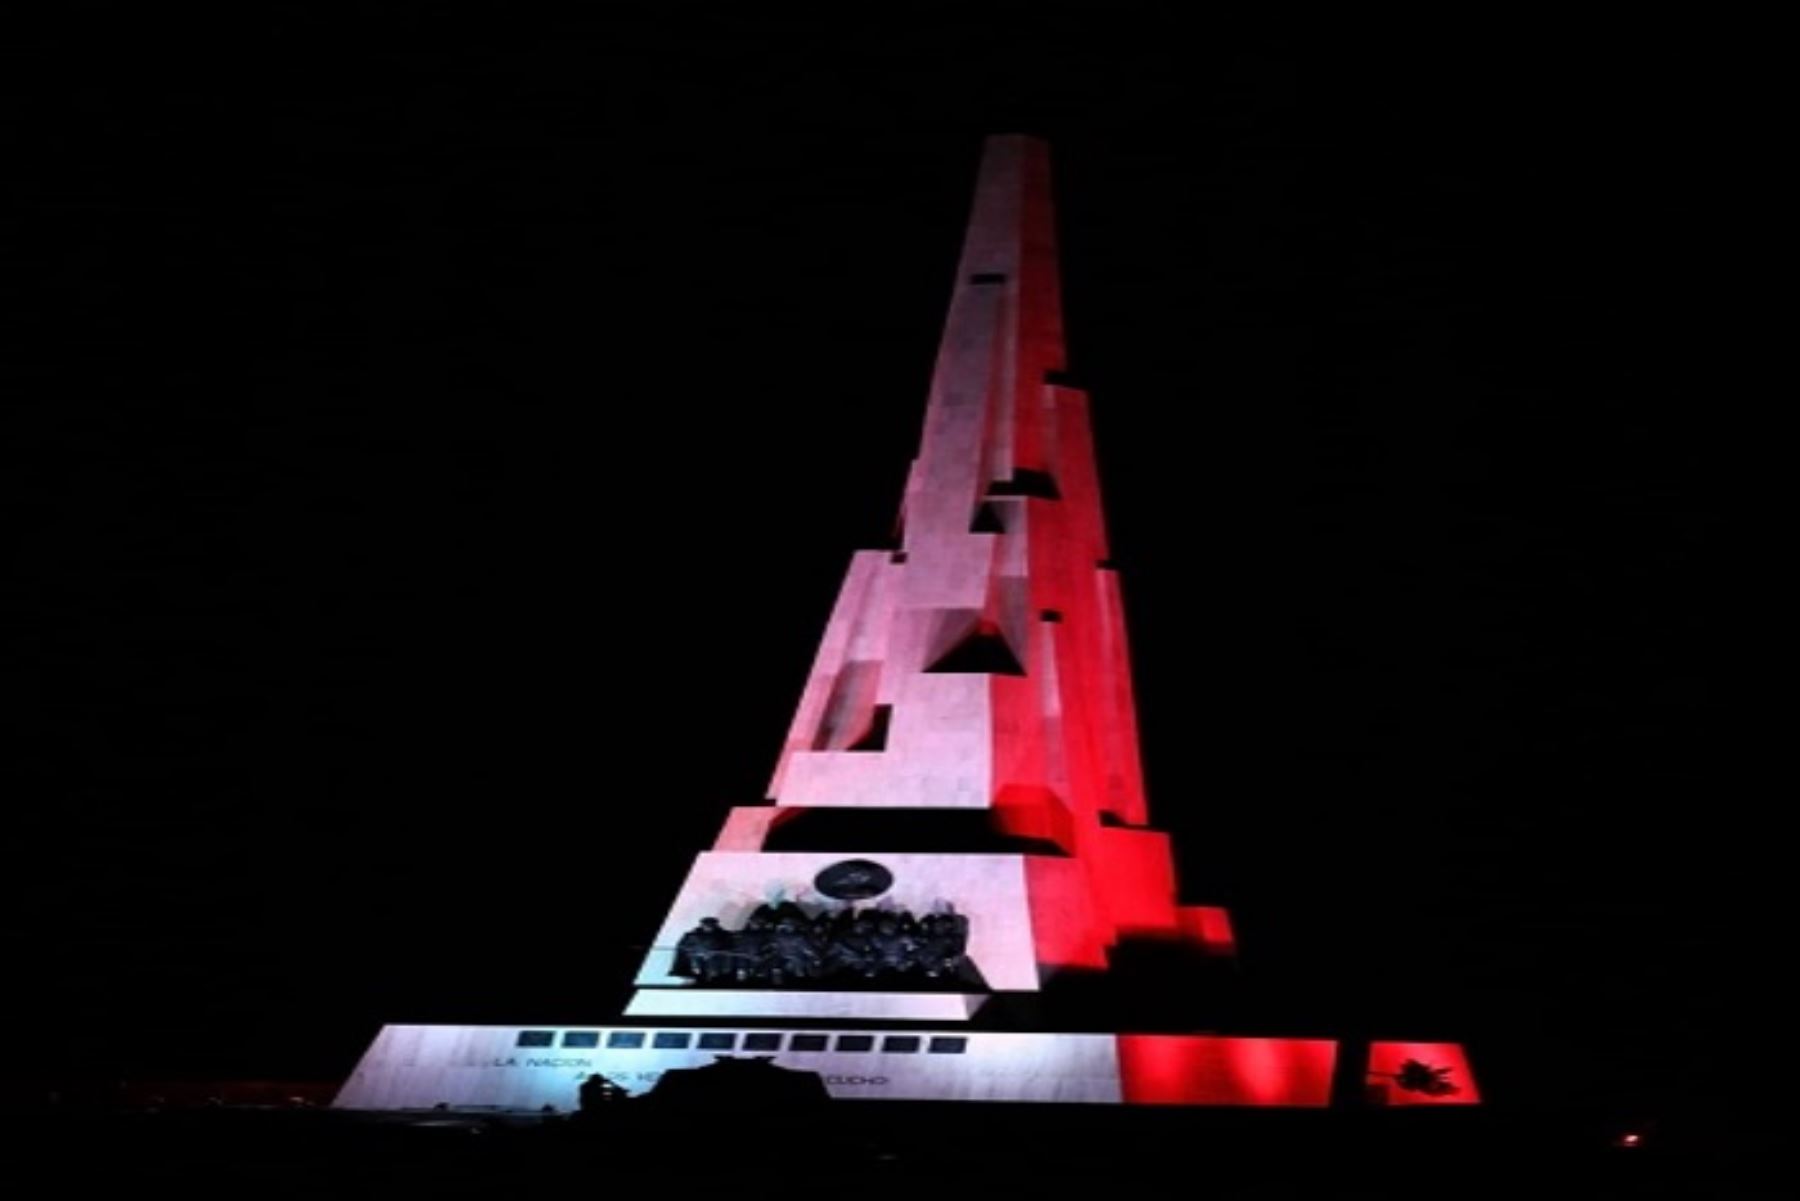 Año del Bicentenario: obeliscos de Junín y Ayacucho se iluminaron de rojo y blanco